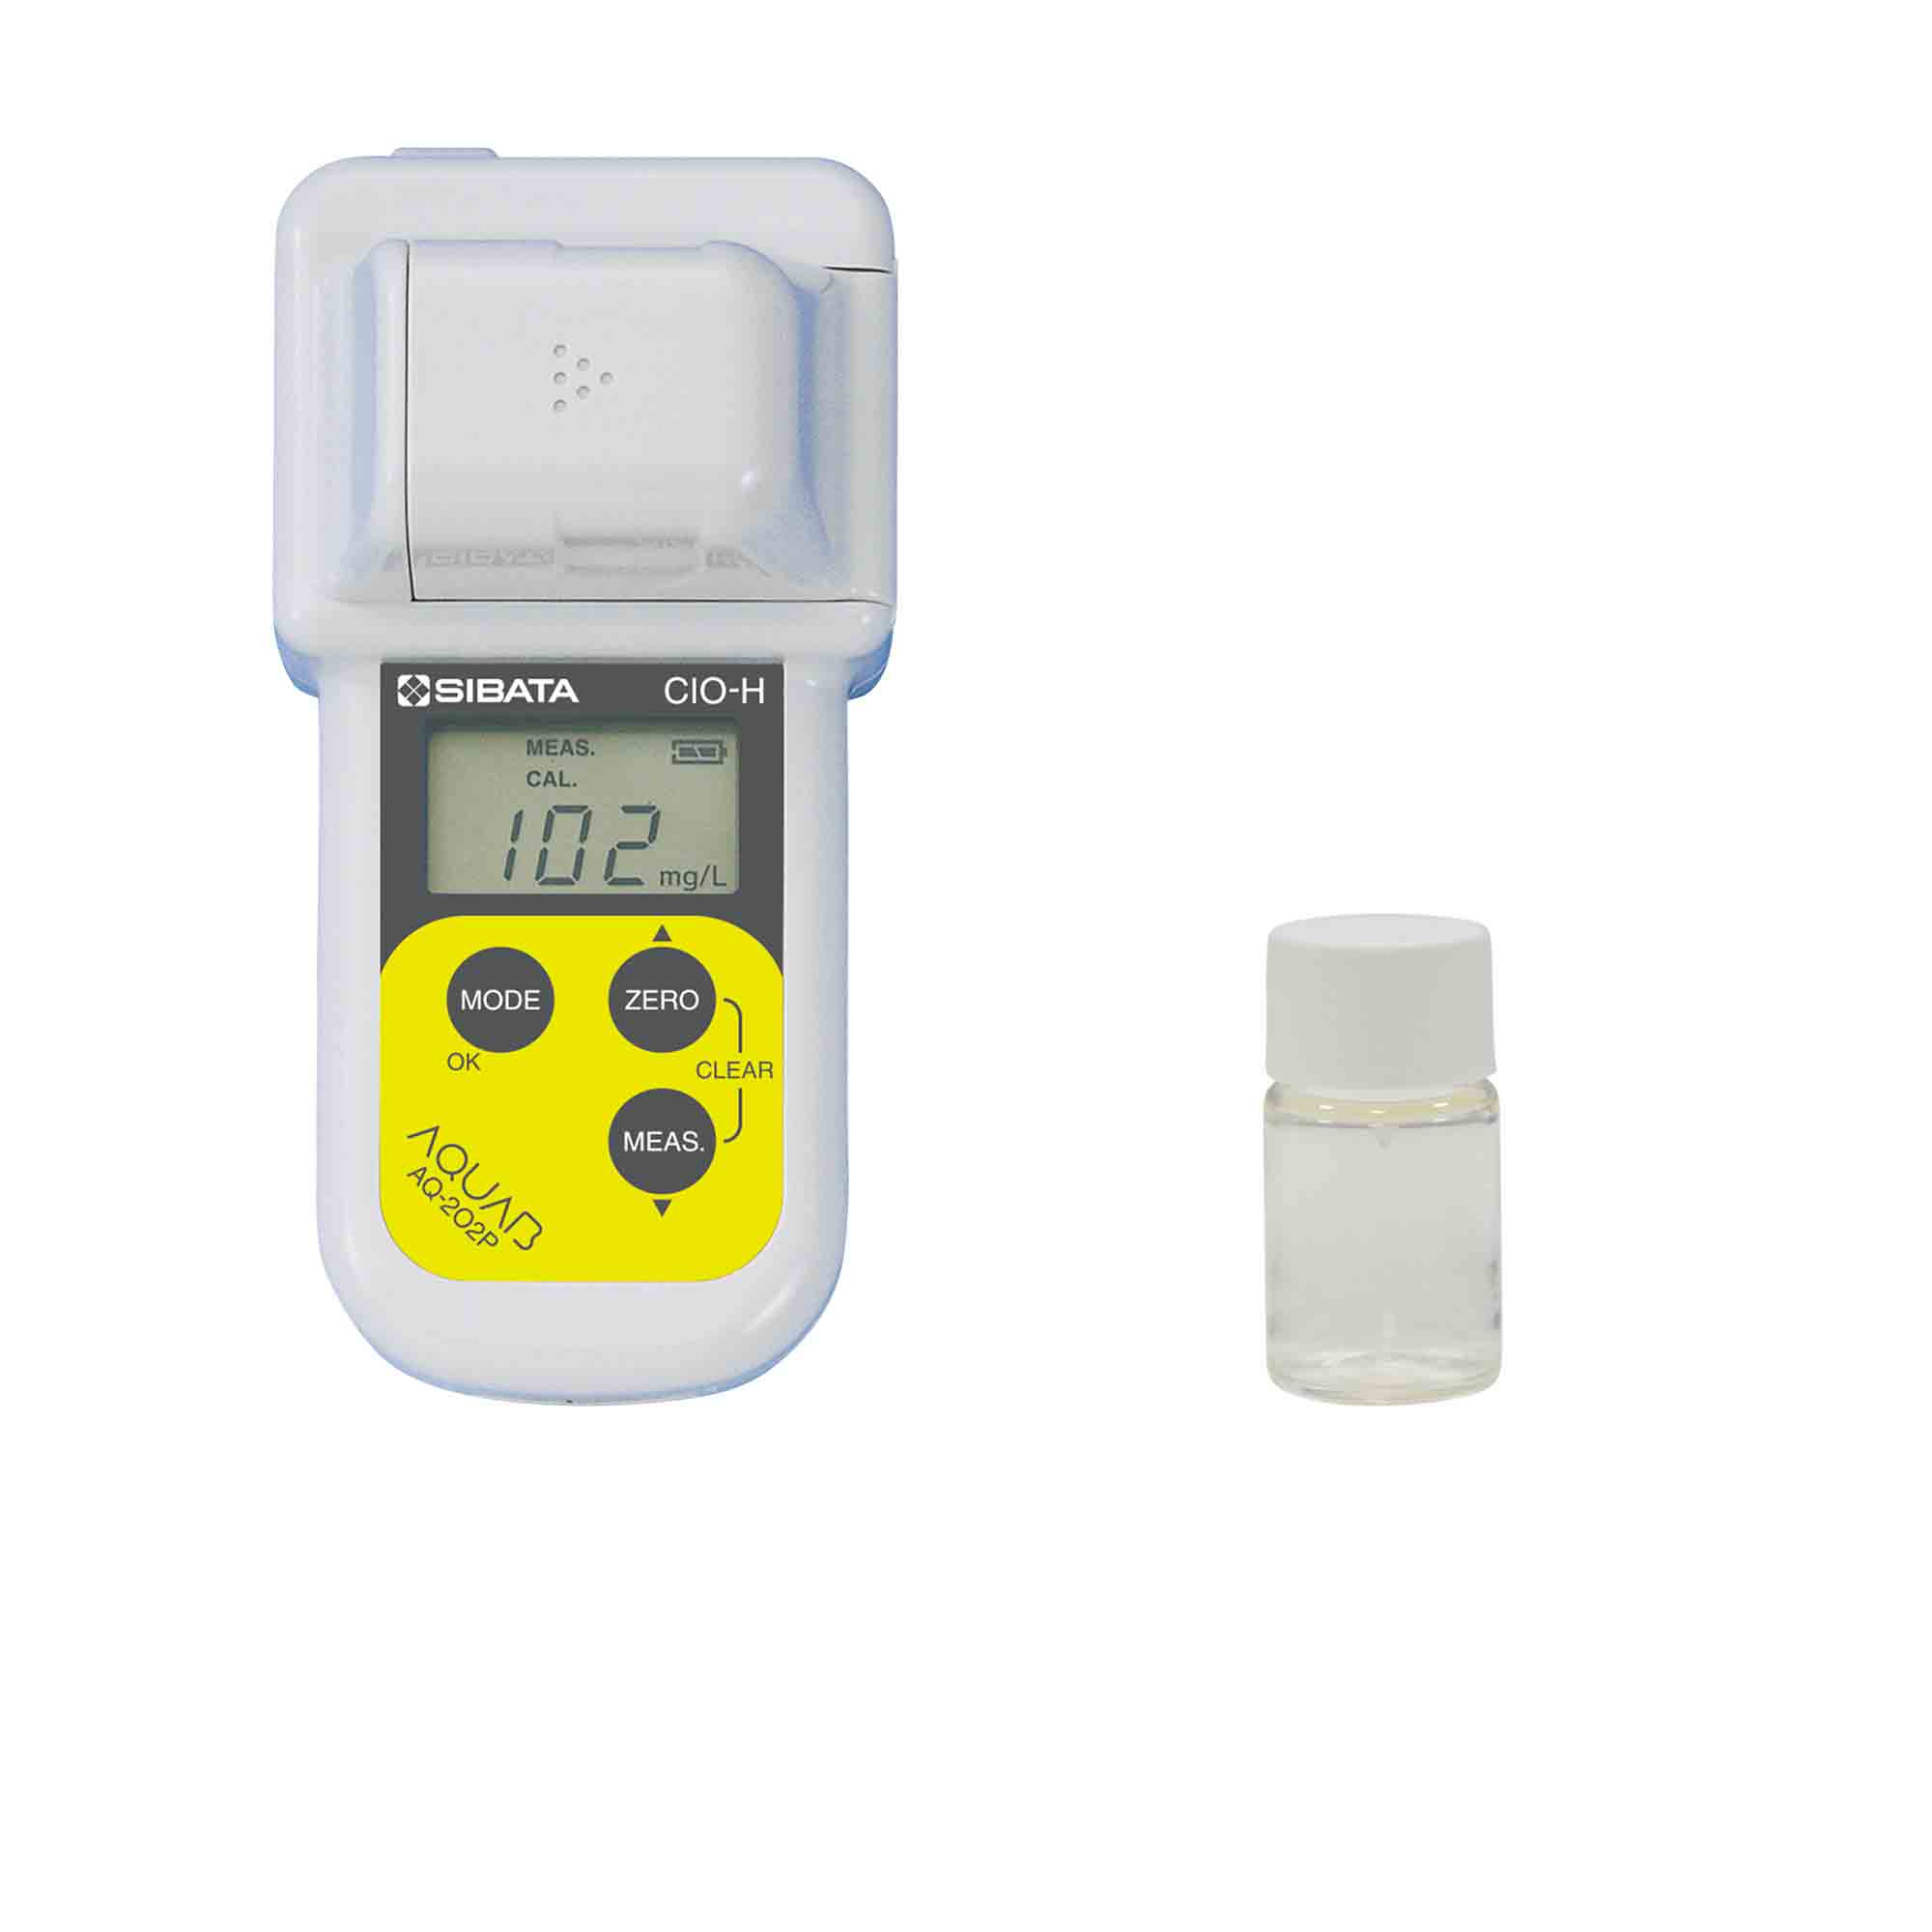 有効塩素濃度測定キット(食品衛生管理対策用) AQ-202P型